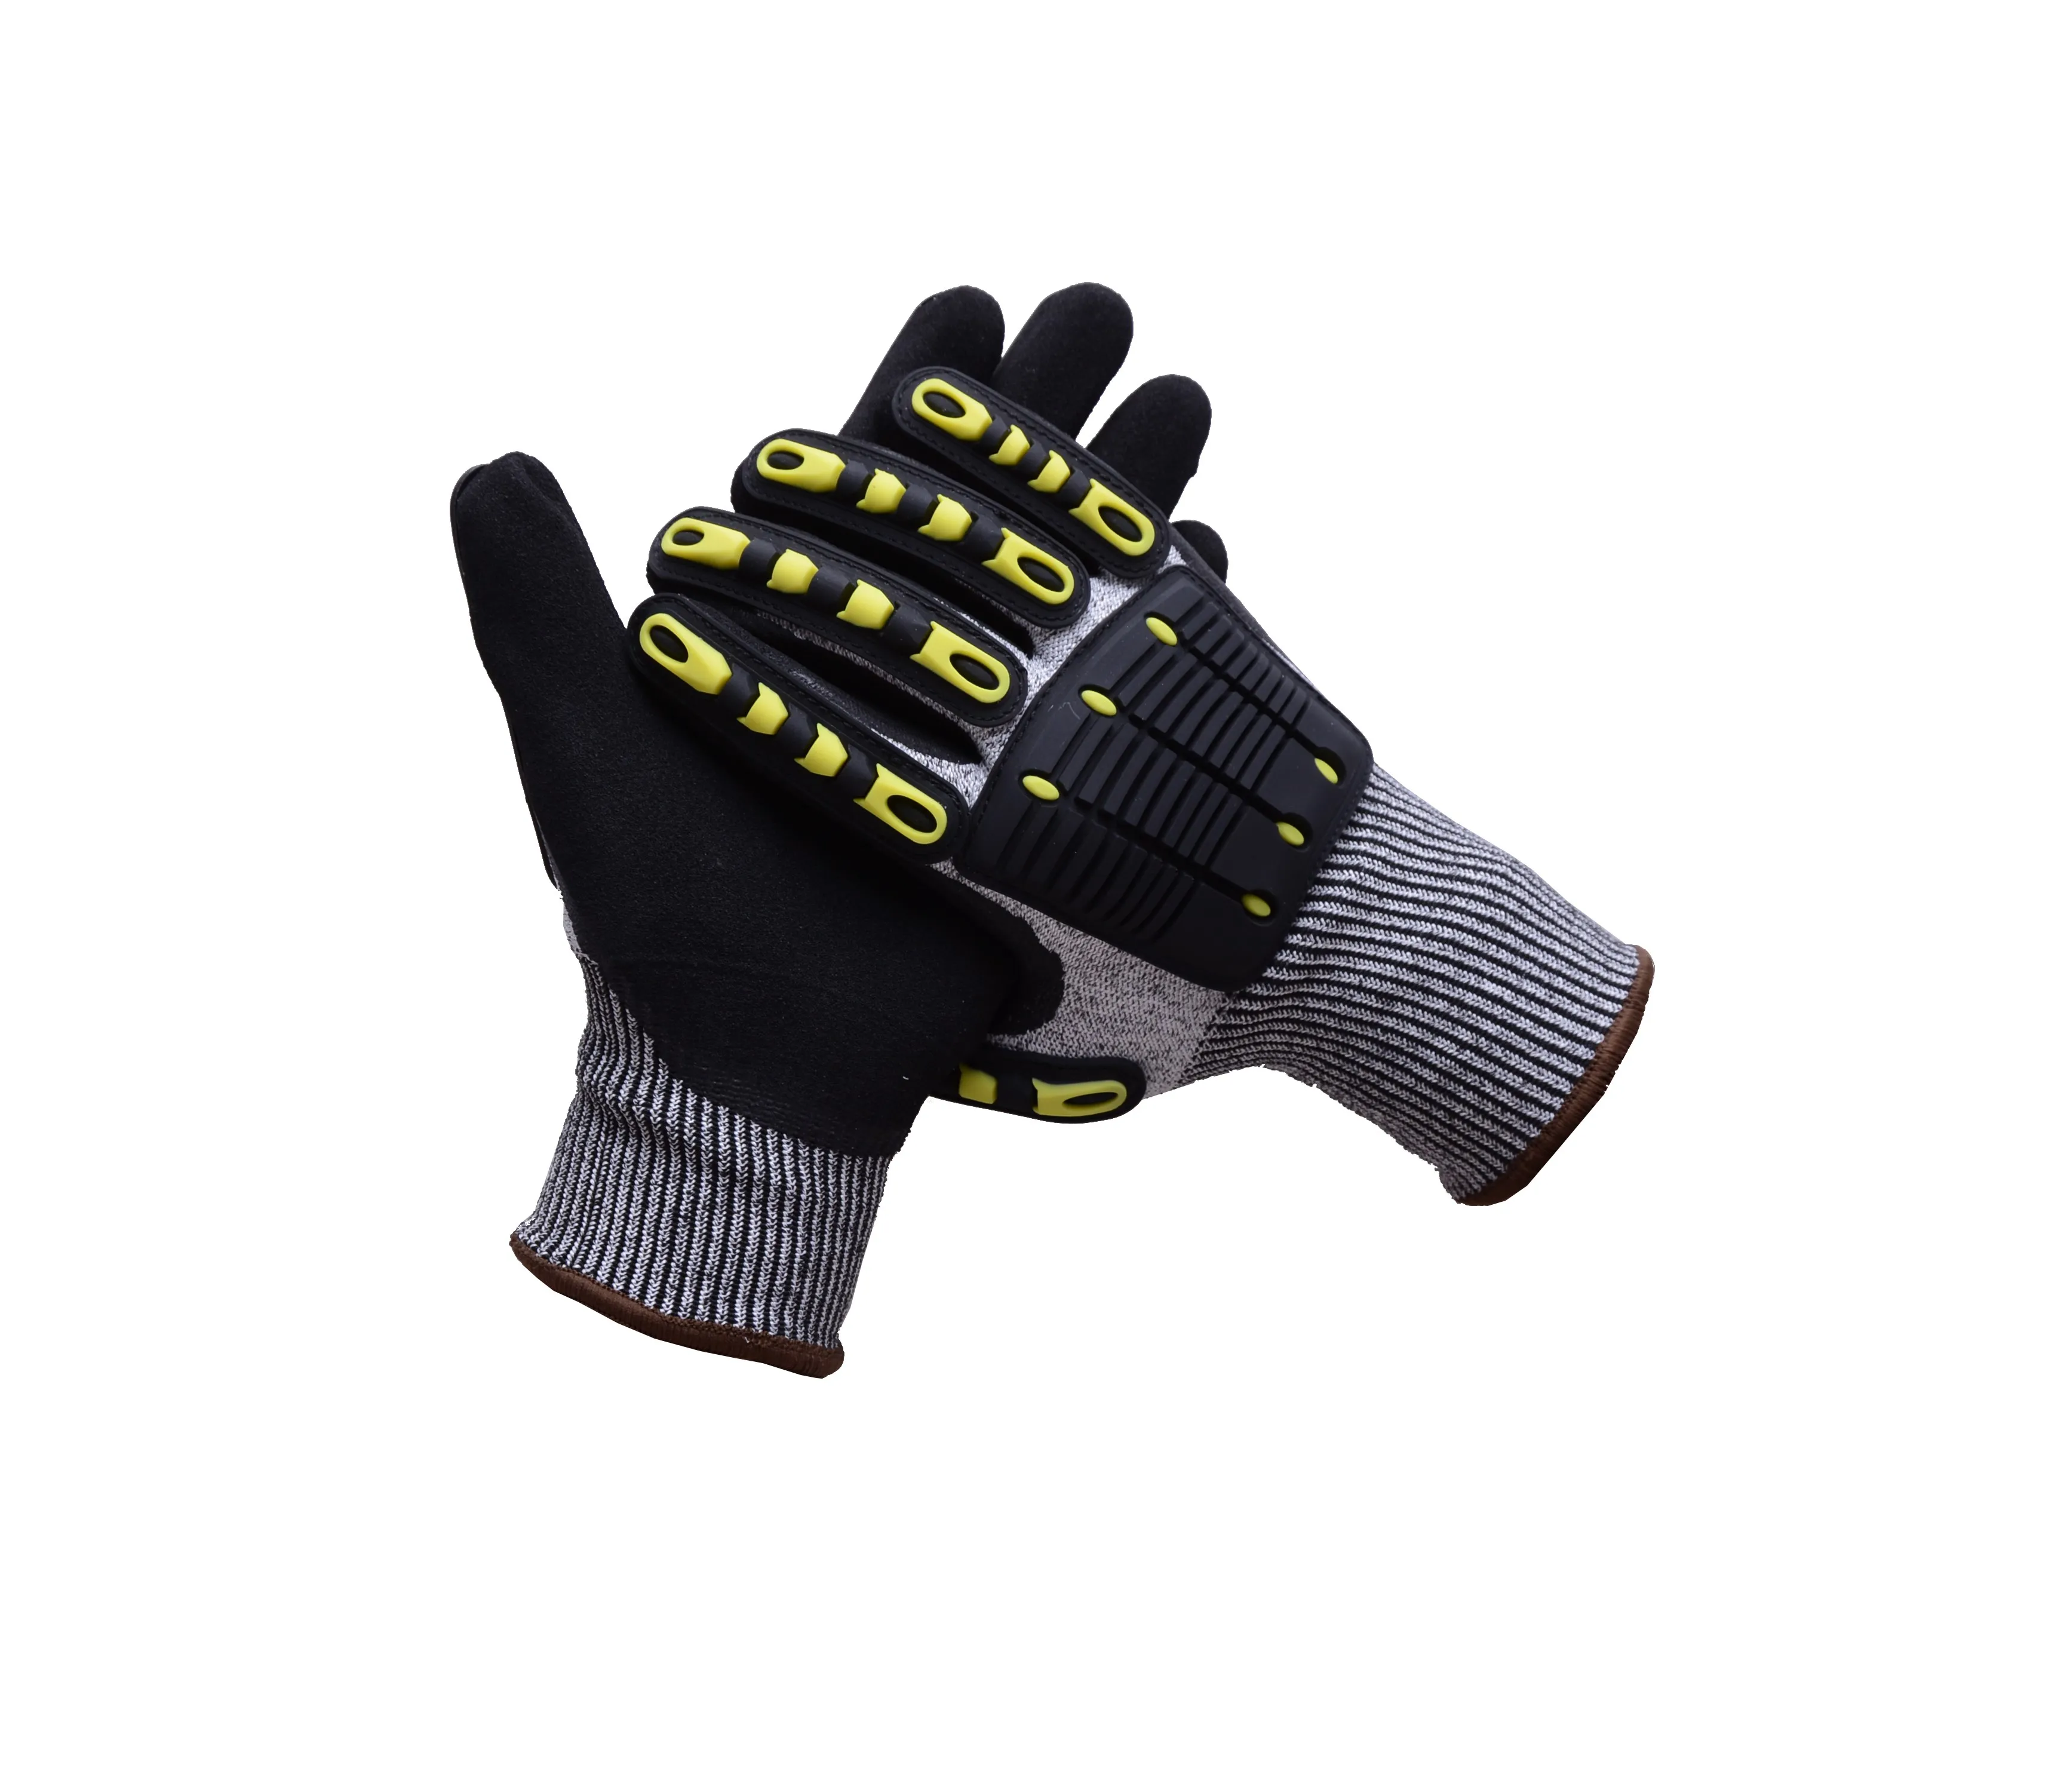 specialized fingerless gloves